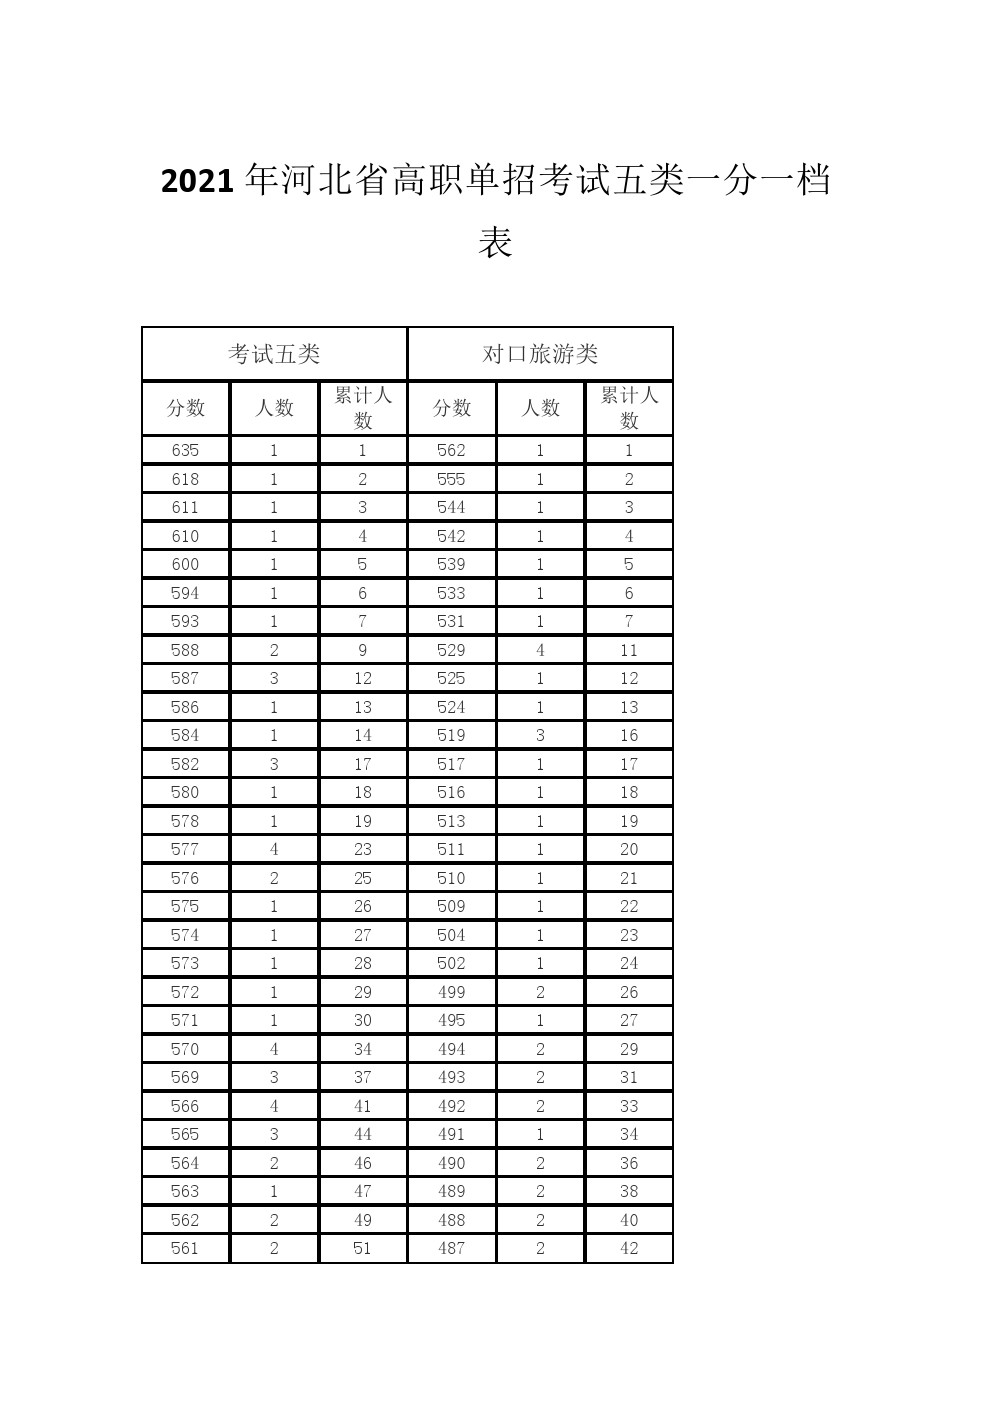 2021年河北省高职单招考试五类和对口旅游类一分一档表 